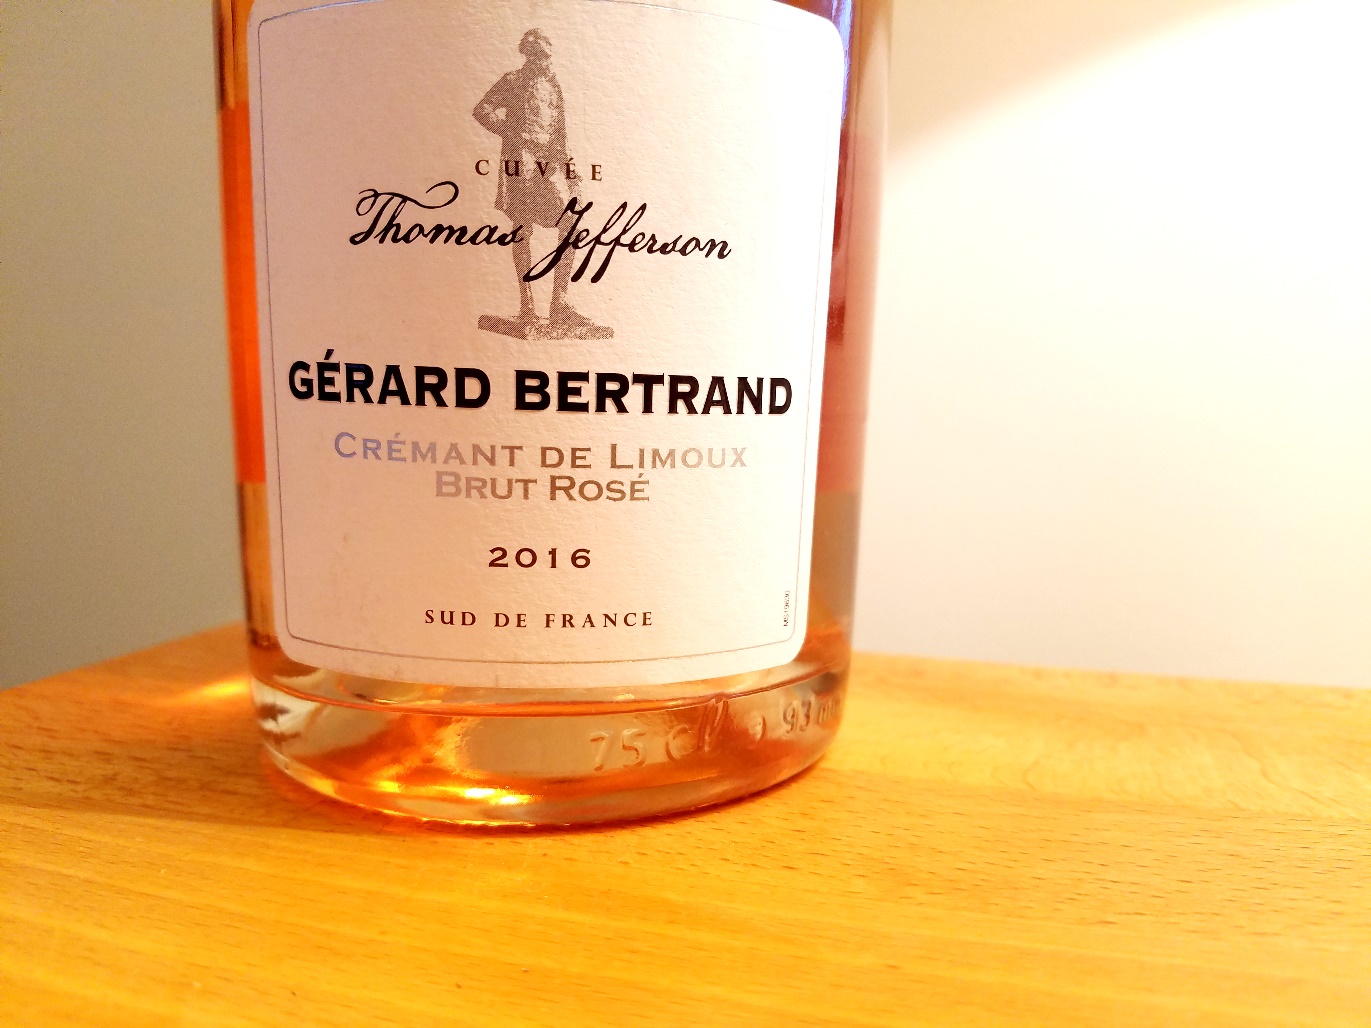 Gérard Bertrand, Thomas Jefferson Crémant de Limoux Brut Rosé 2016, France, Wine Casual